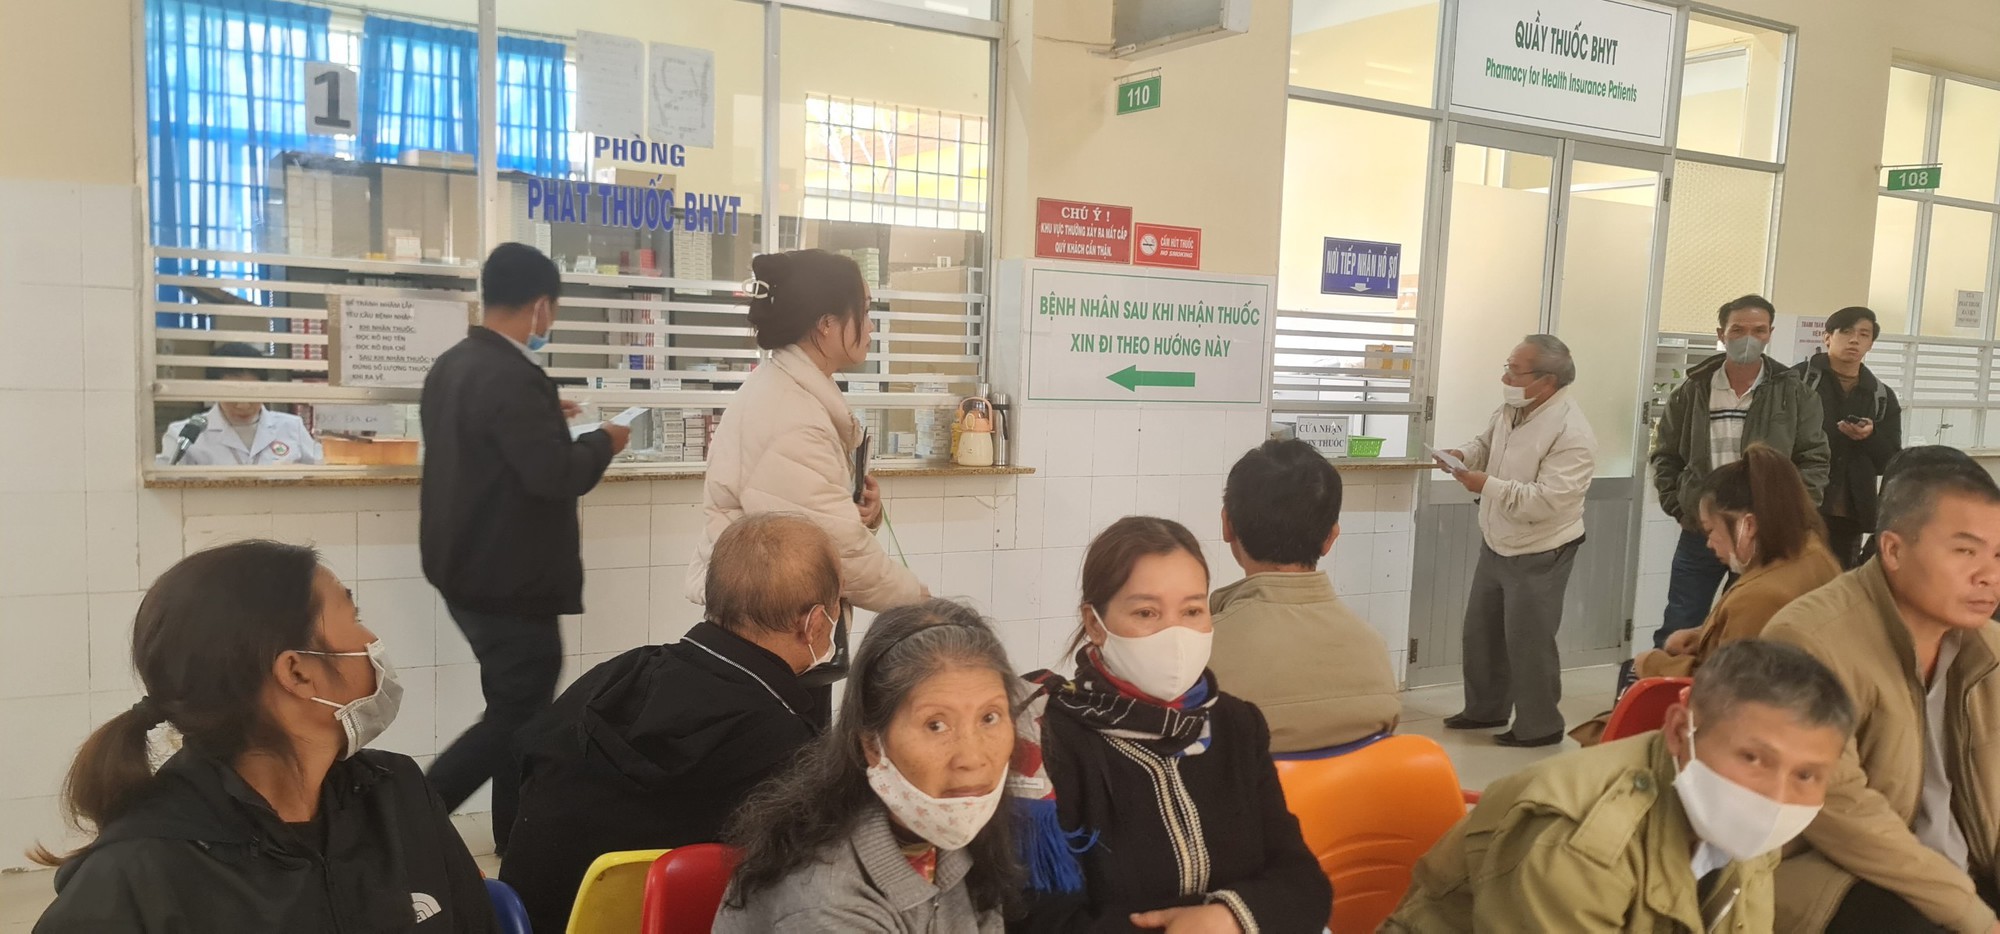 Một bác sĩ nghi trục lợi bảo hiểm y tế ở Lâm Đồng với số tiền gần 900 triệu đồng - Ảnh 3.